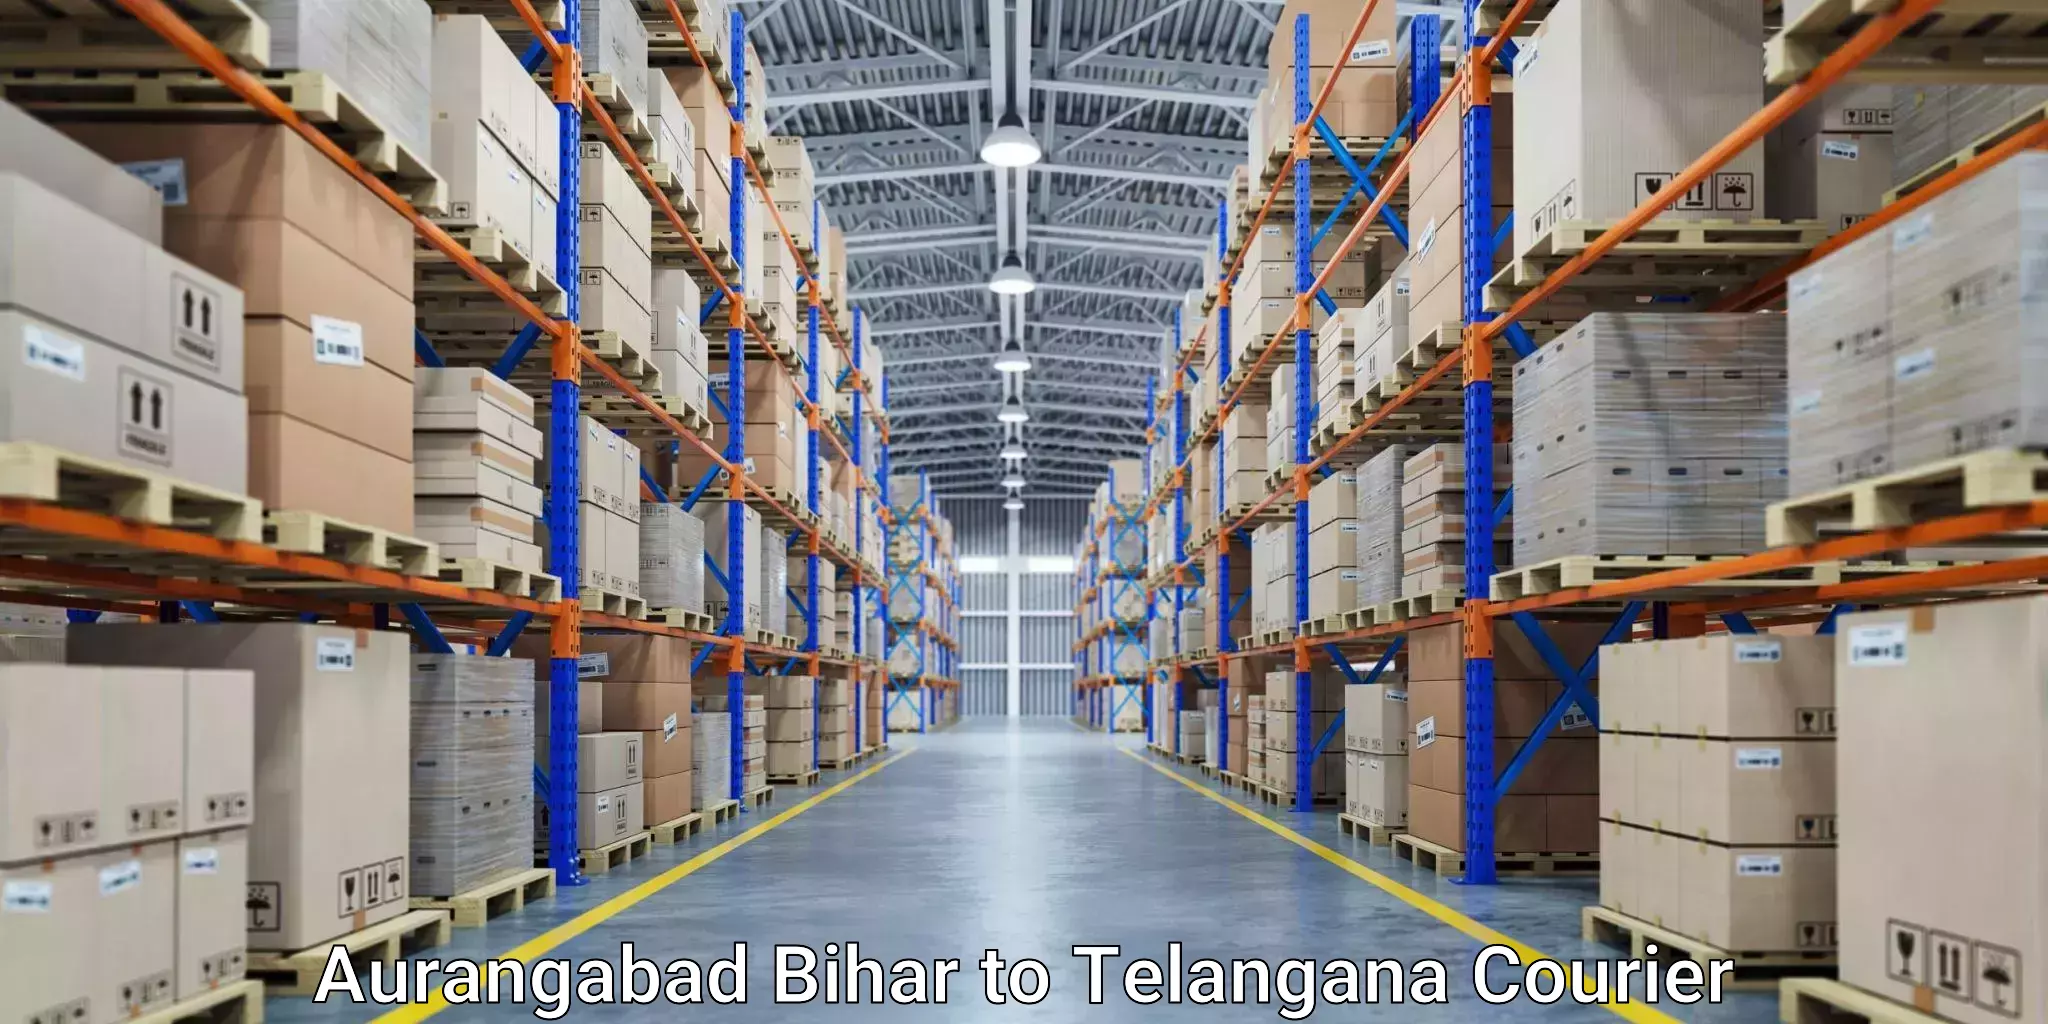 Scheduled delivery Aurangabad Bihar to Allapalli